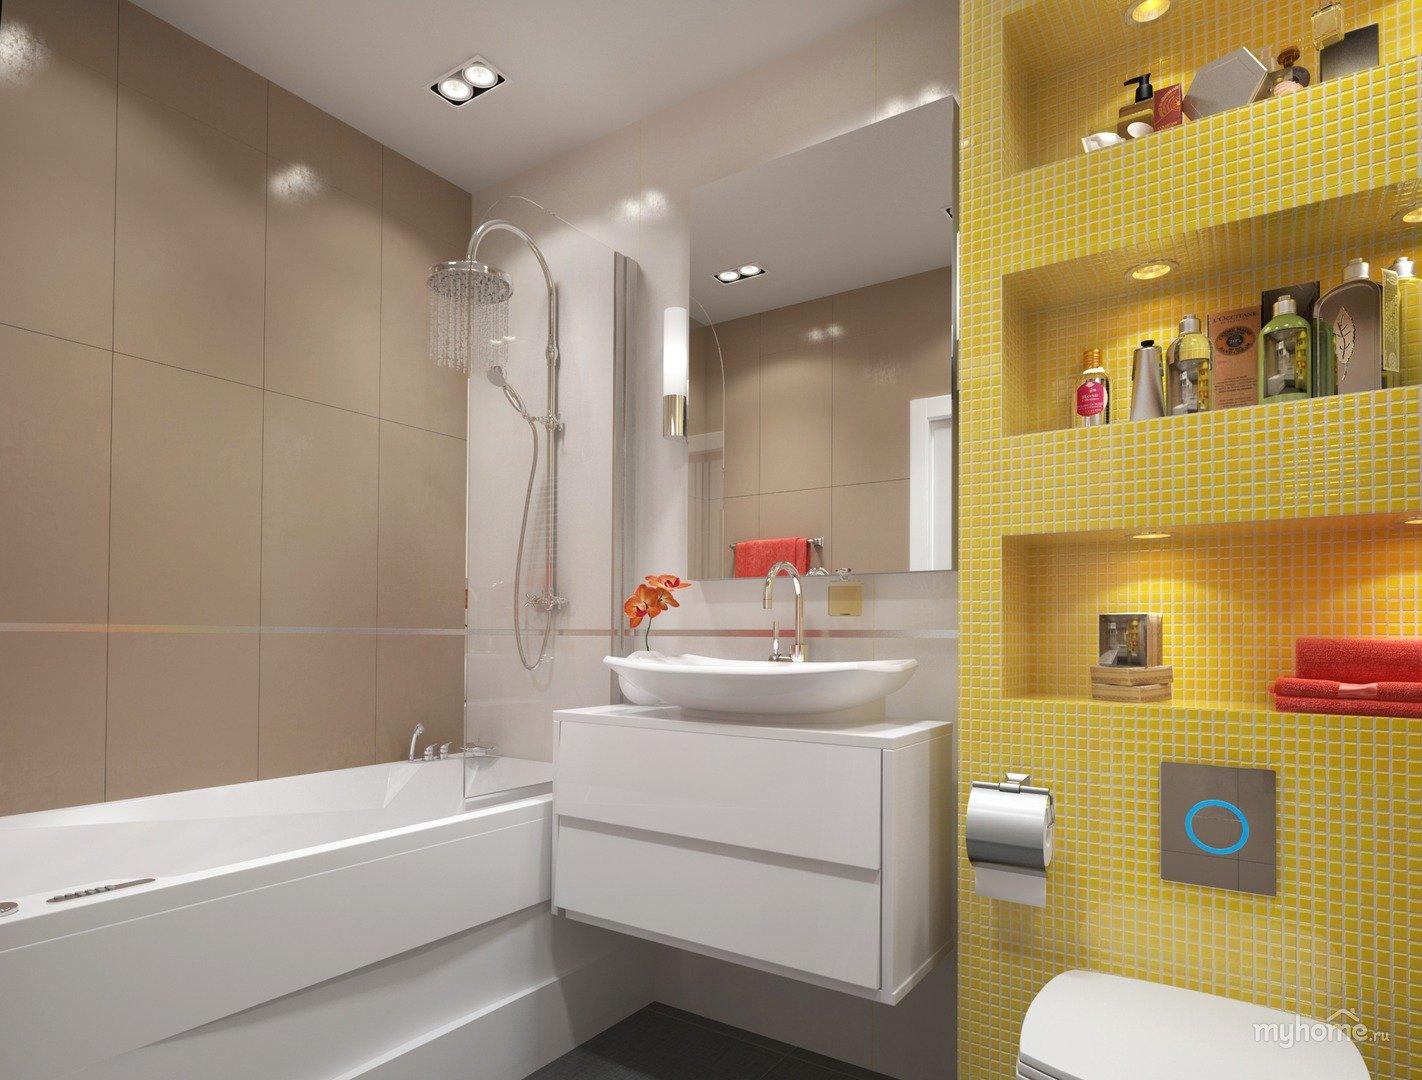 Ванная комната дизайн фото 4. Дизайнерские решения для ванной комнаты. Идея ванной комнаты с туалетом. Небольшая ванная комната. Интерьер небольшой ванной комнаты.